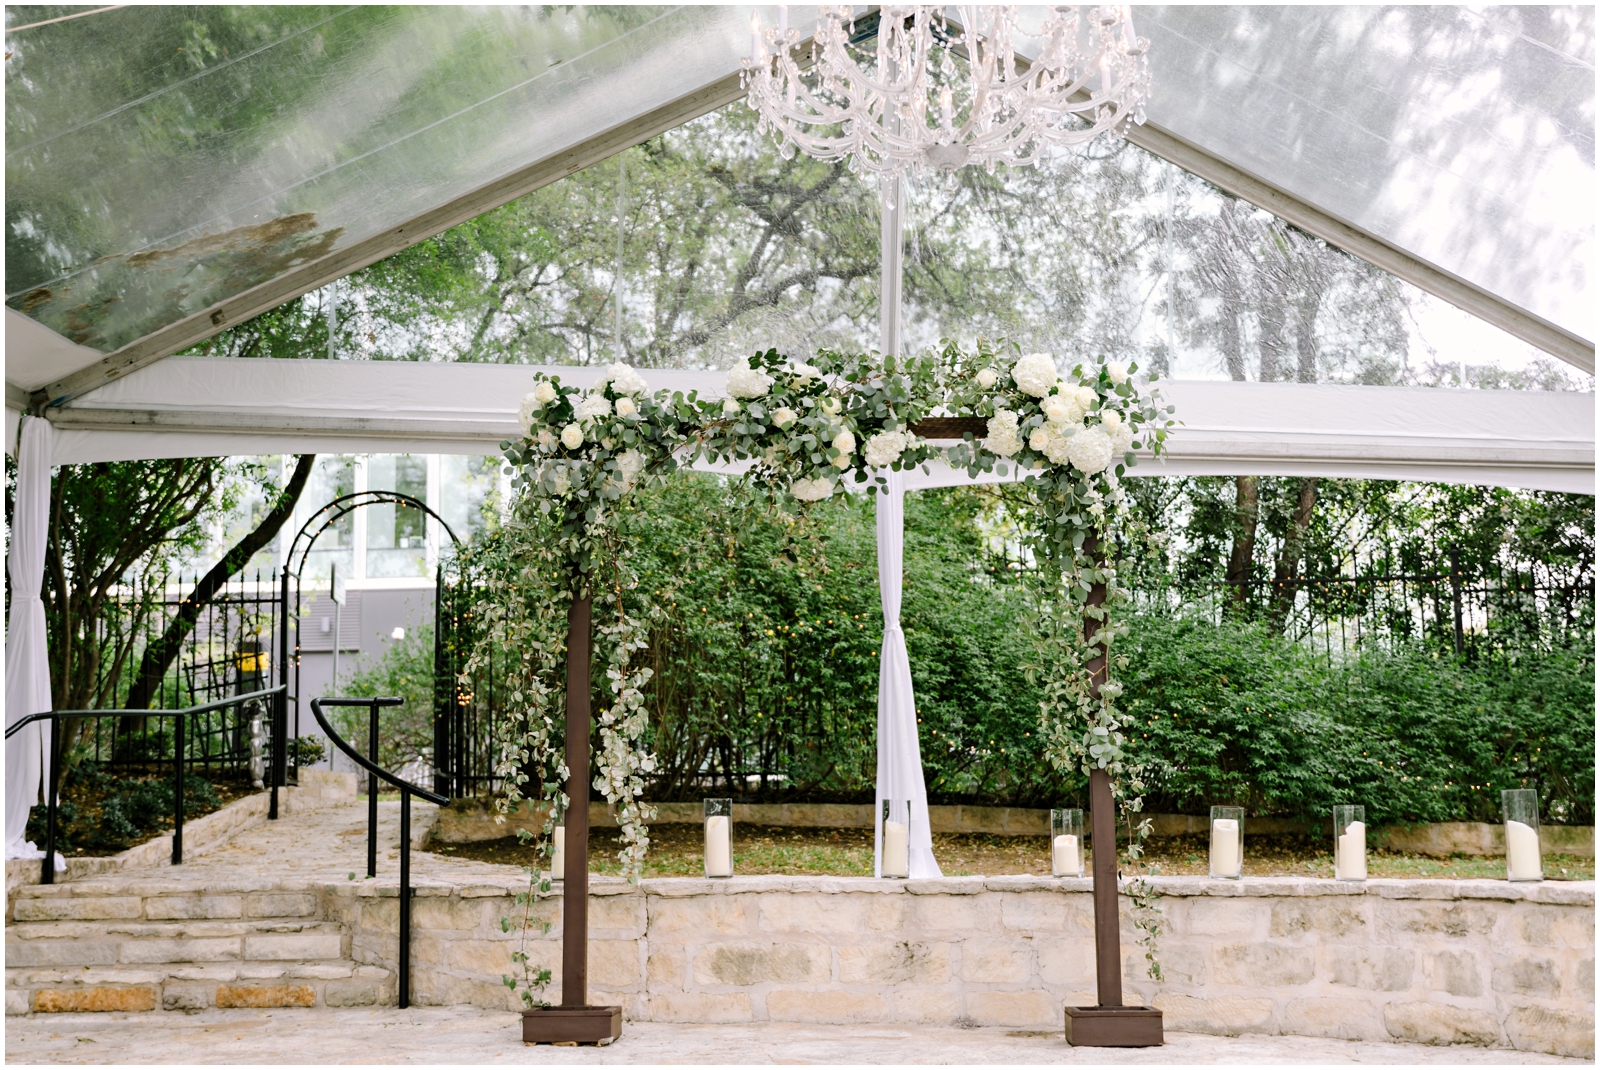  Greenery wedding arch 